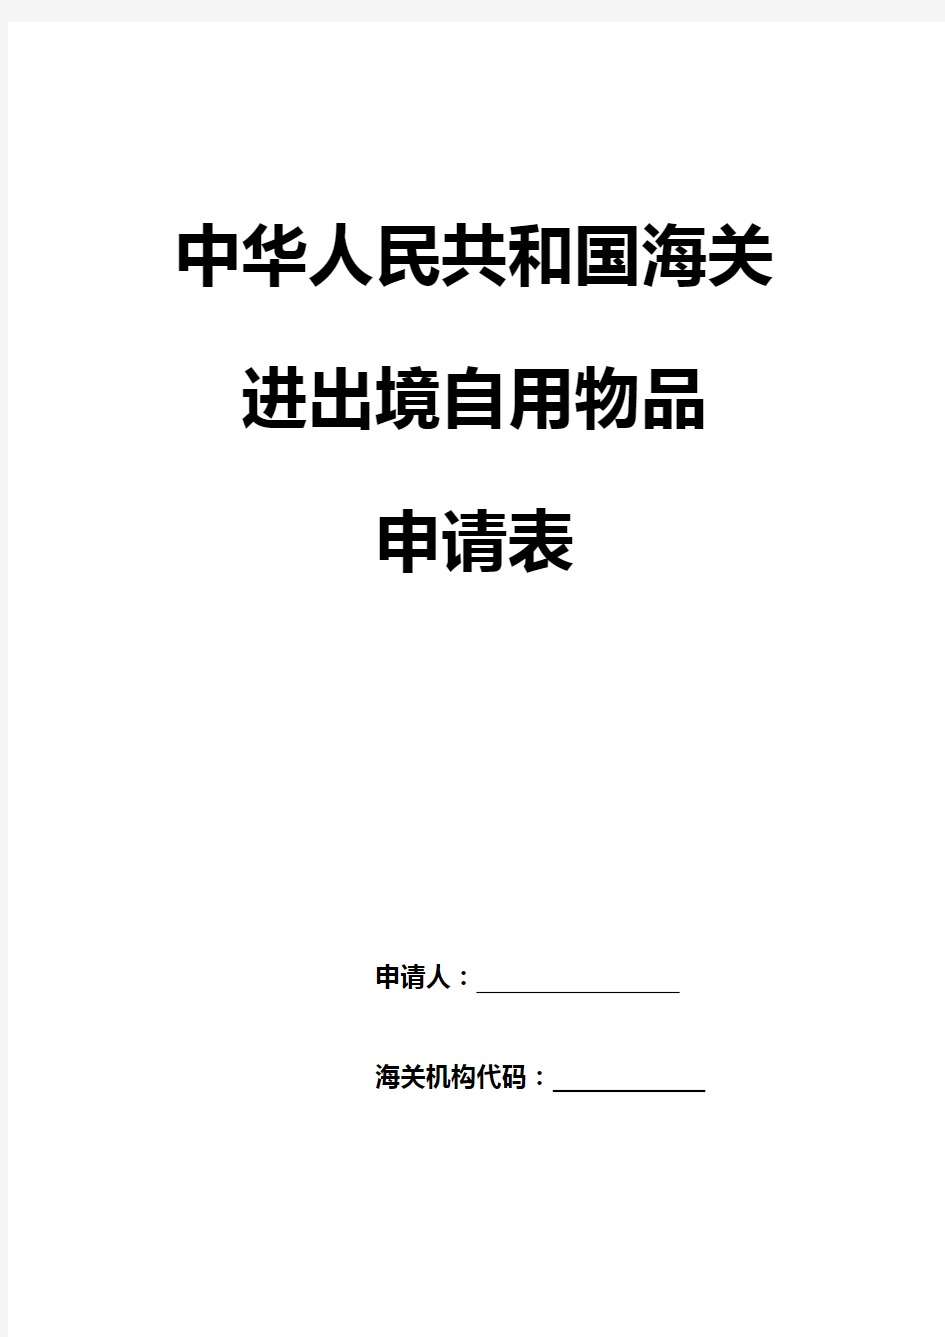 中华人民共和国海关进出境自用物品申请表